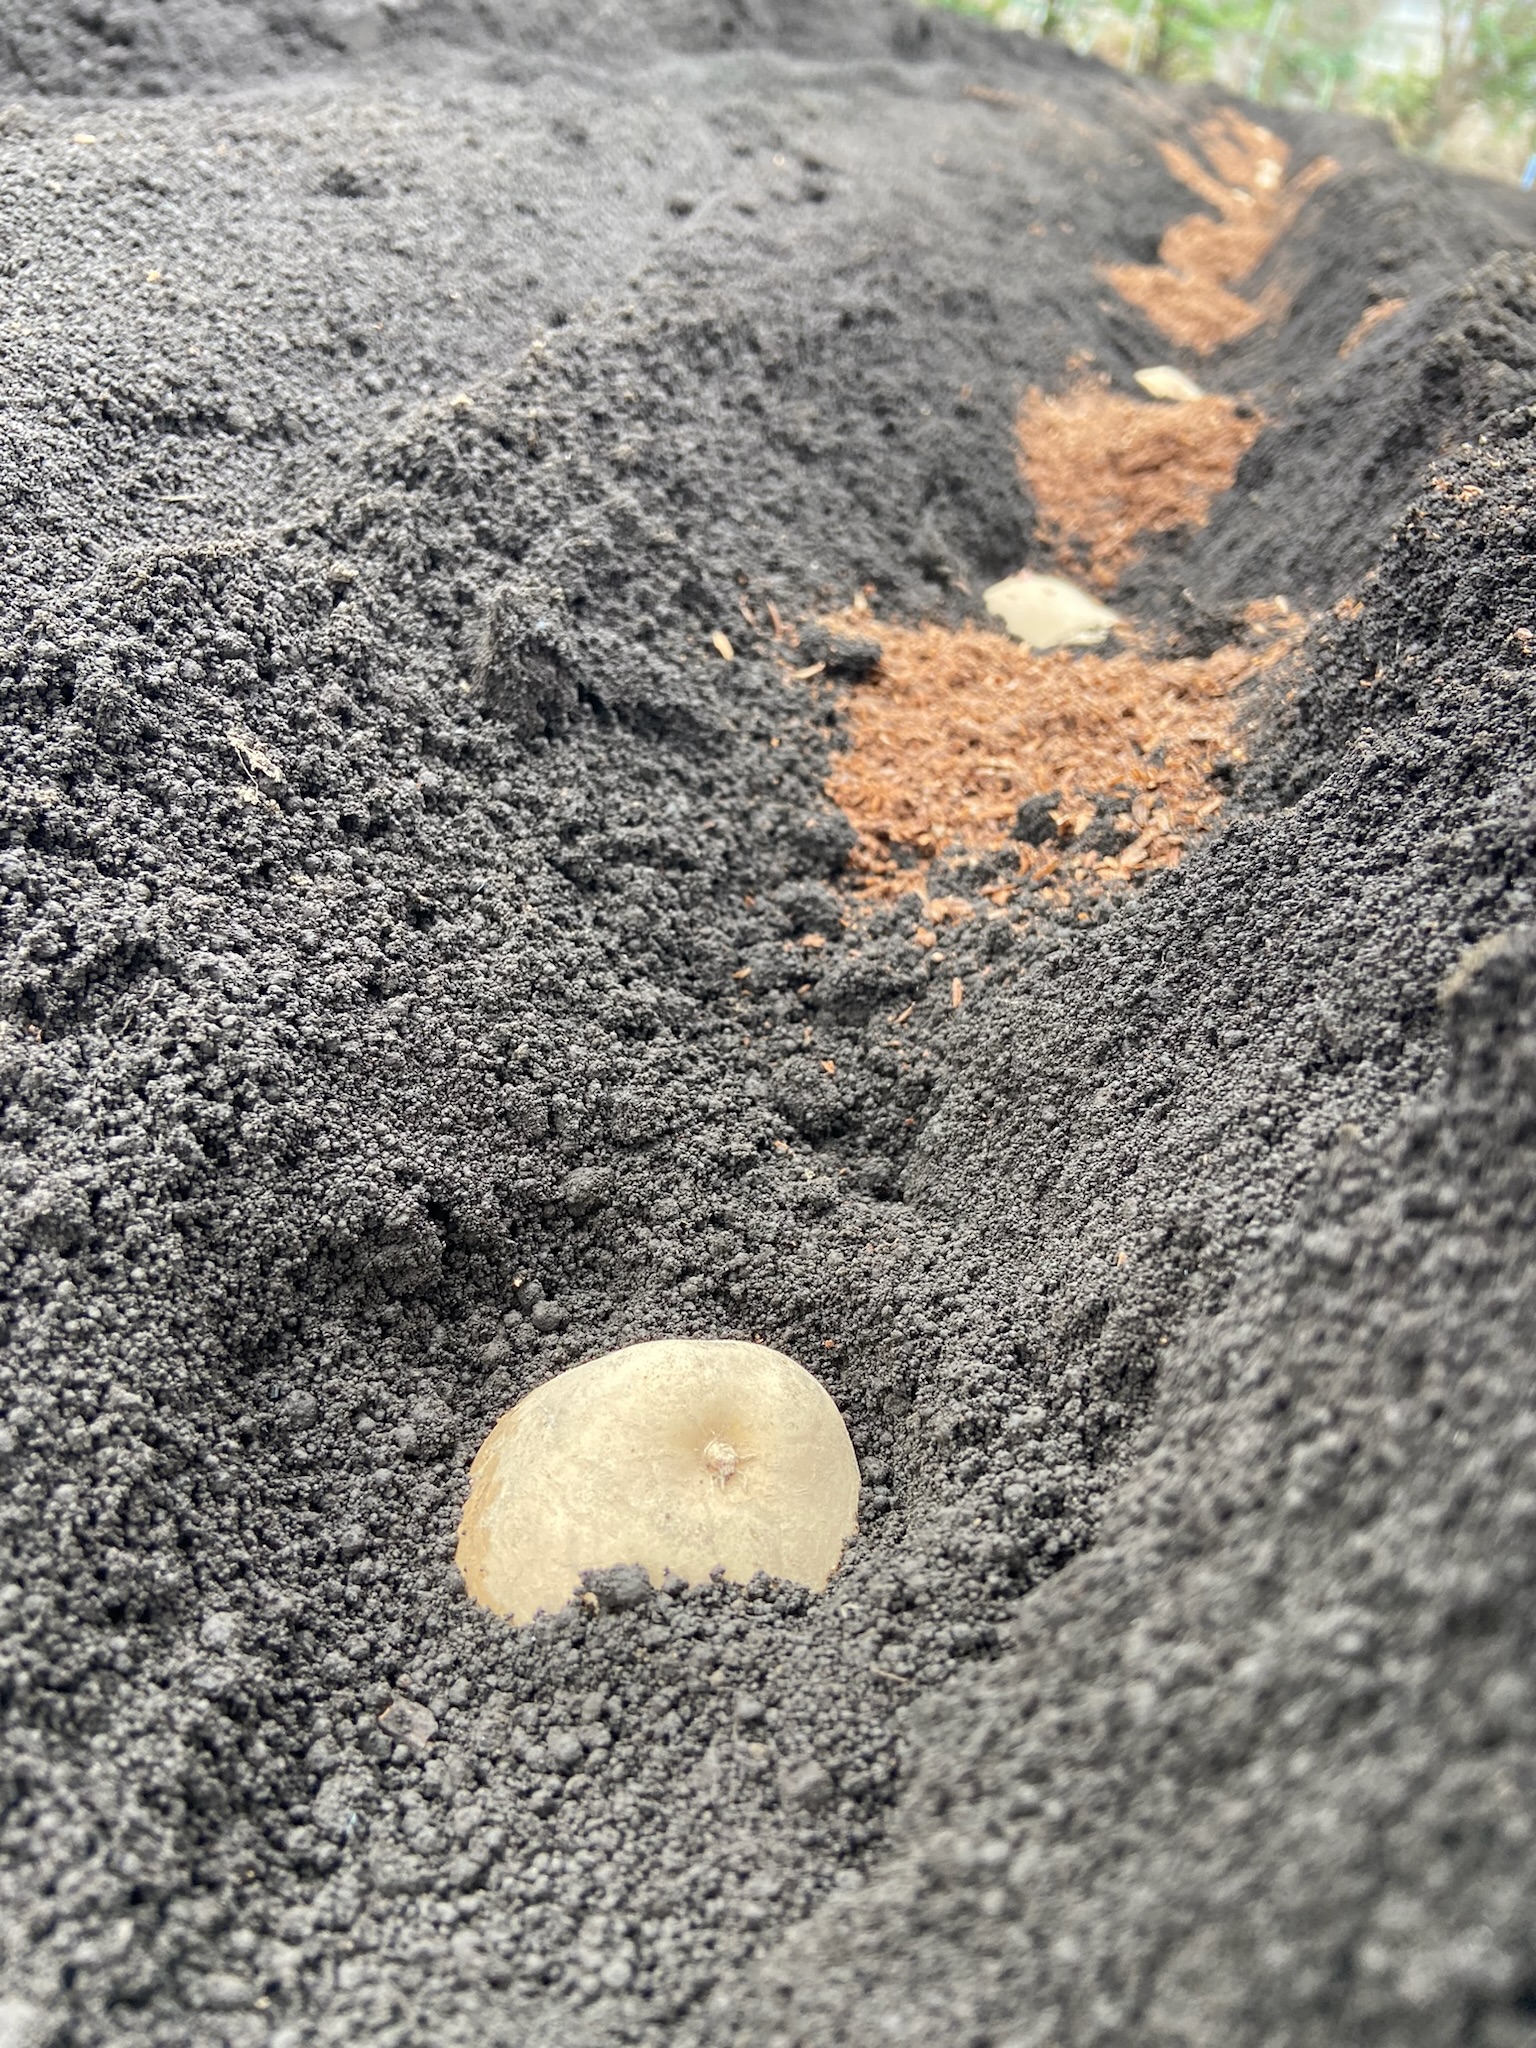 ジャガイモの植え付け。種イモが土の中から顔を出しています。